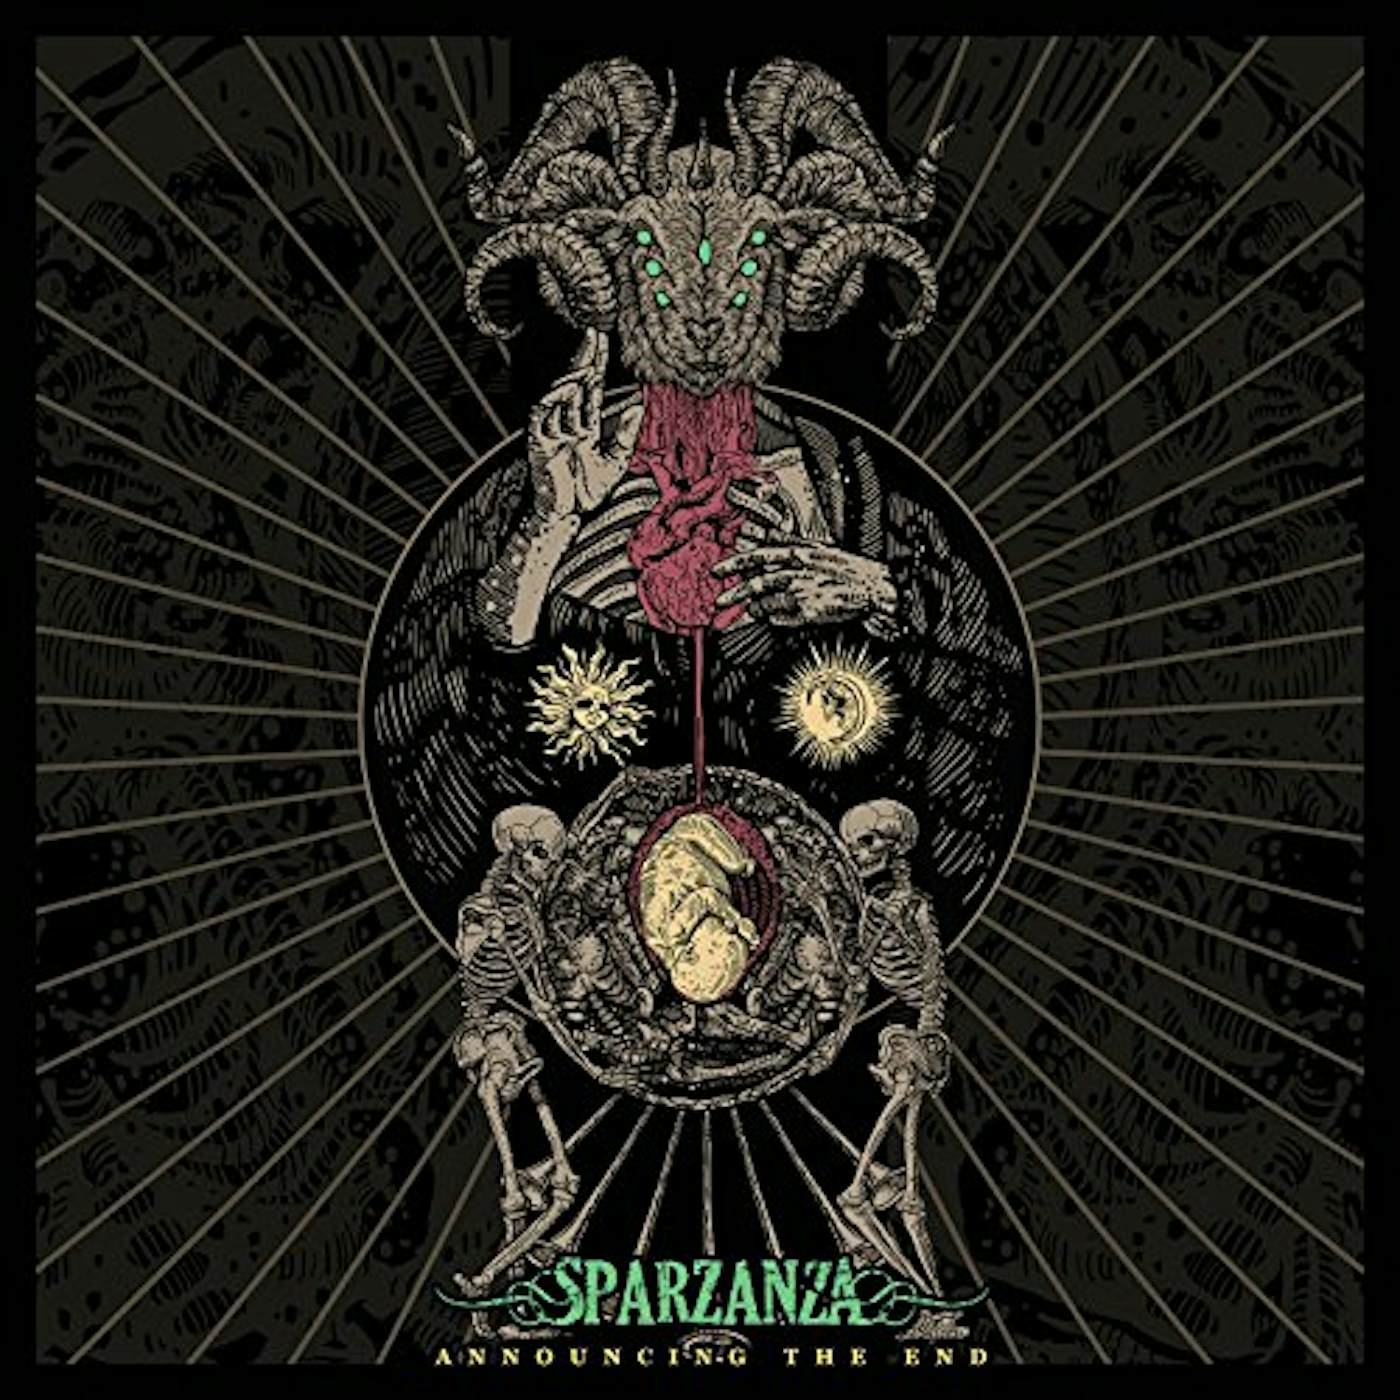 Sparzanza ANNOUNCING THE END CD